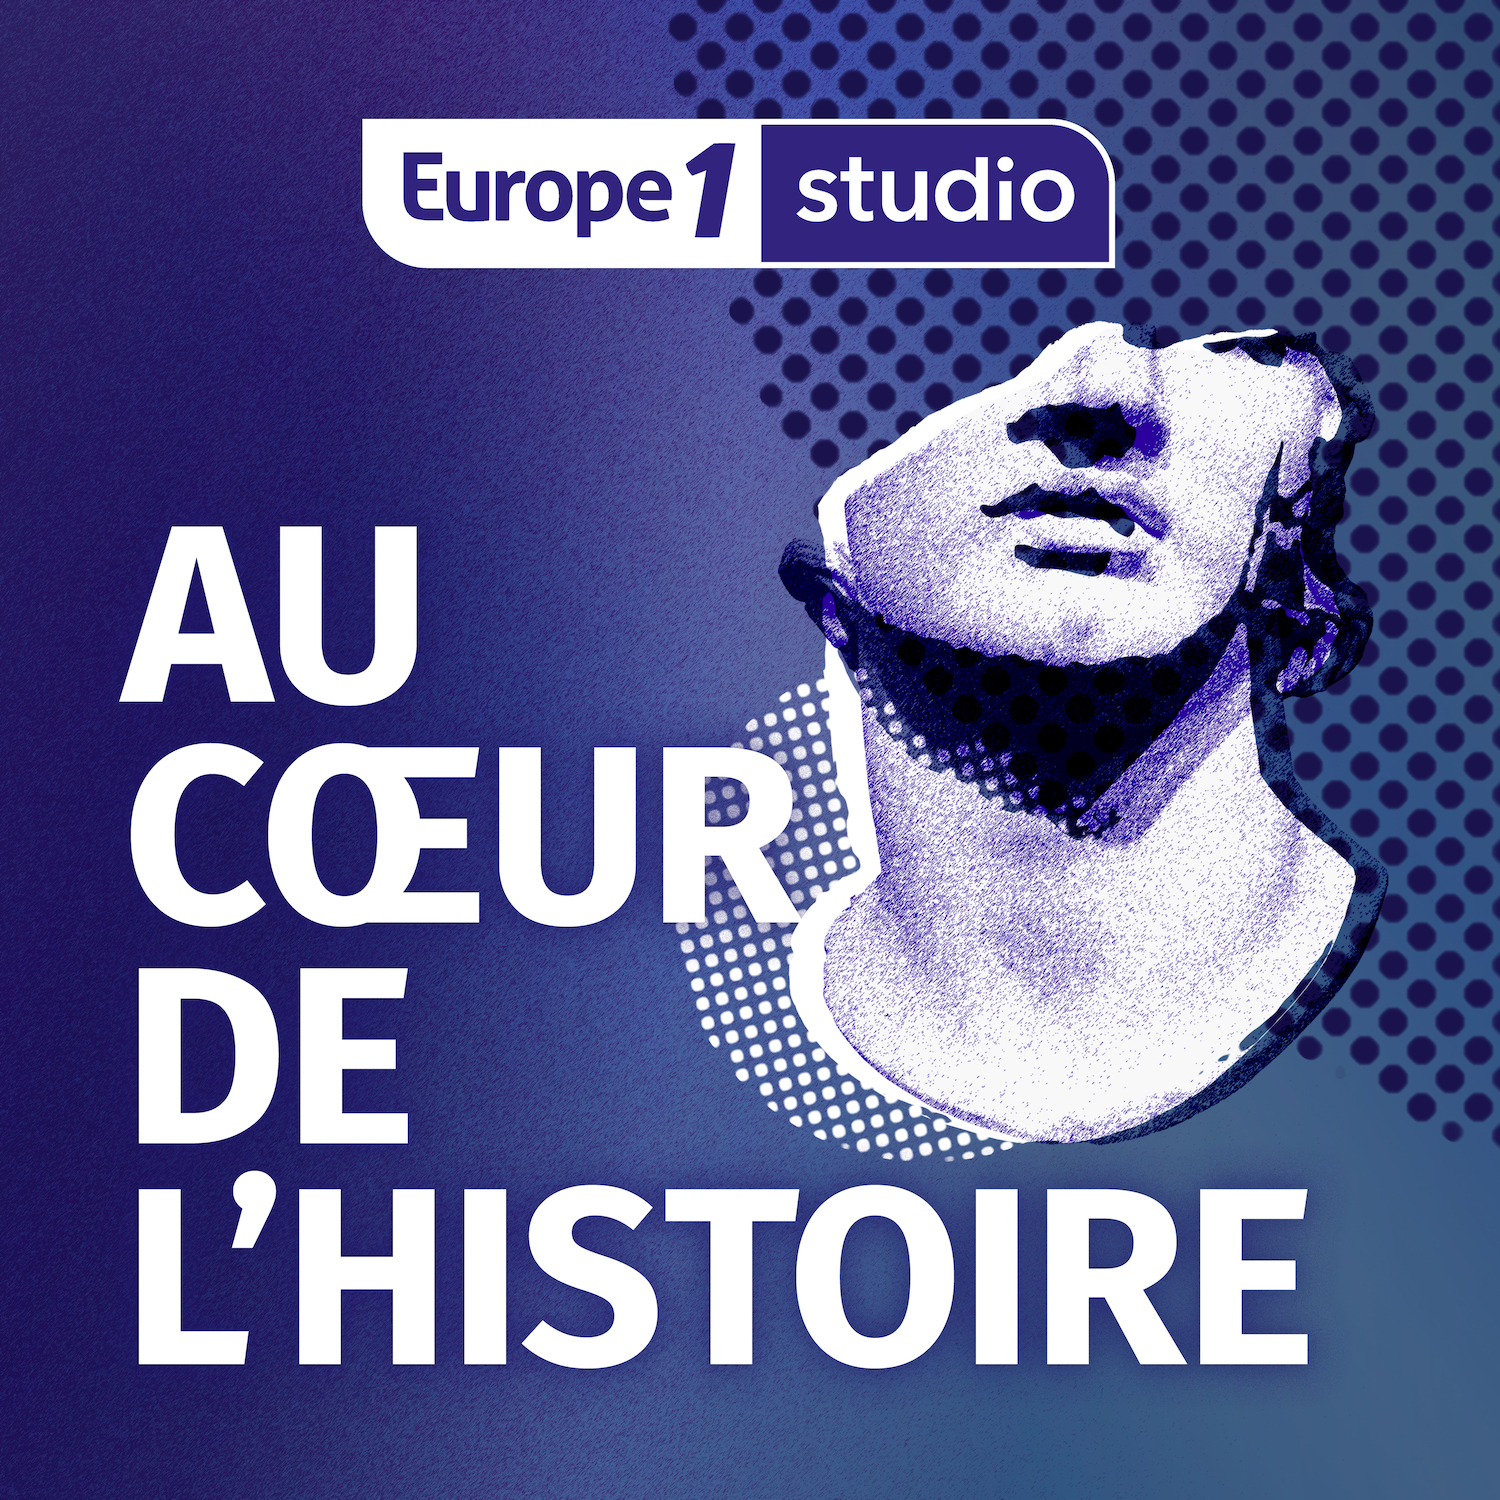 Europe 1 Studio : un nouveau podcast sur le Titanic